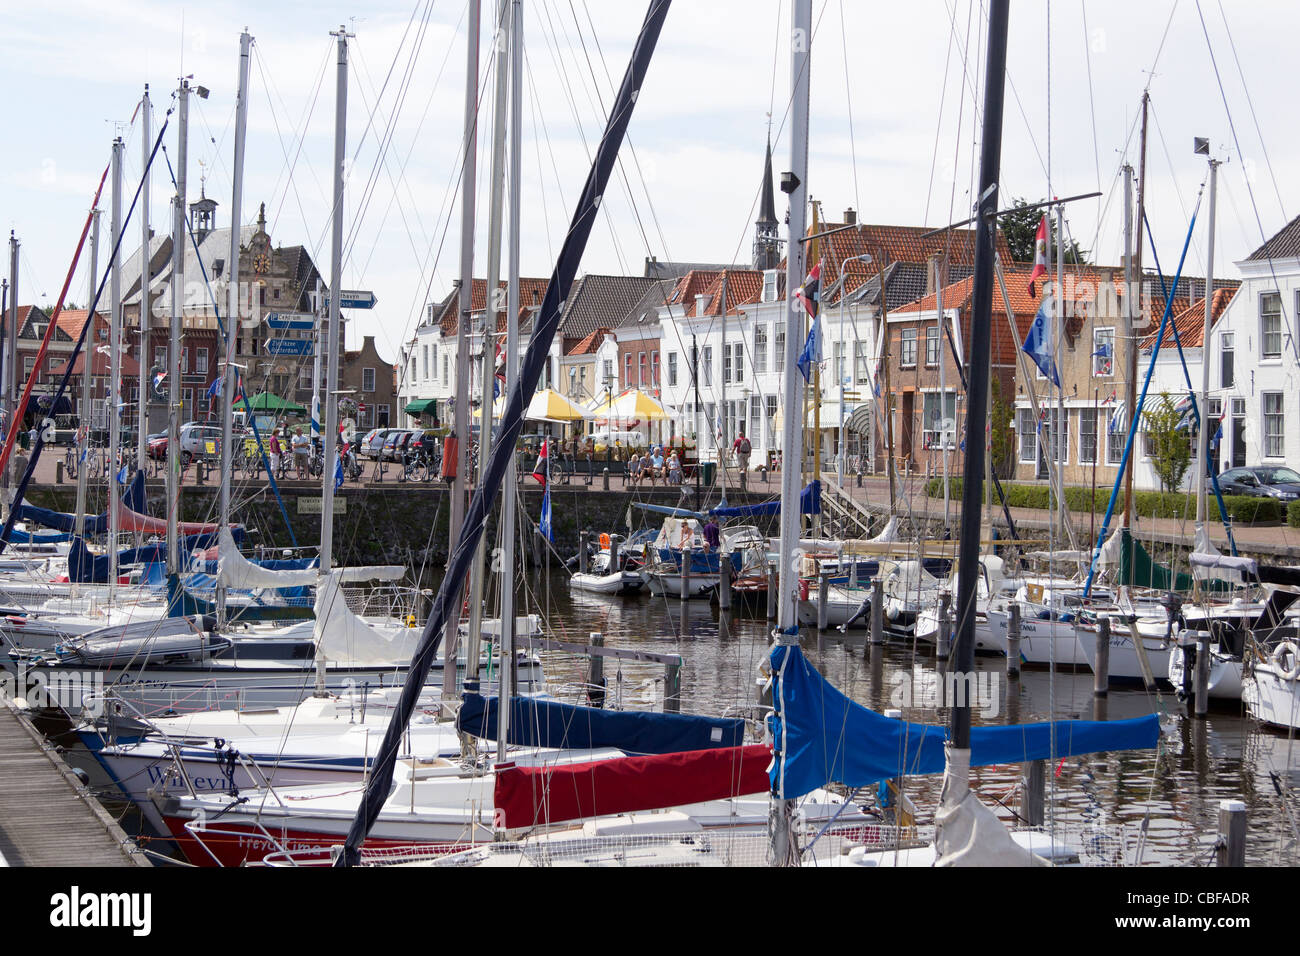 Boats in Brouwershaven harbour, Schouwen-Duiveland, Zeeland, The Netherlands Stock Photo